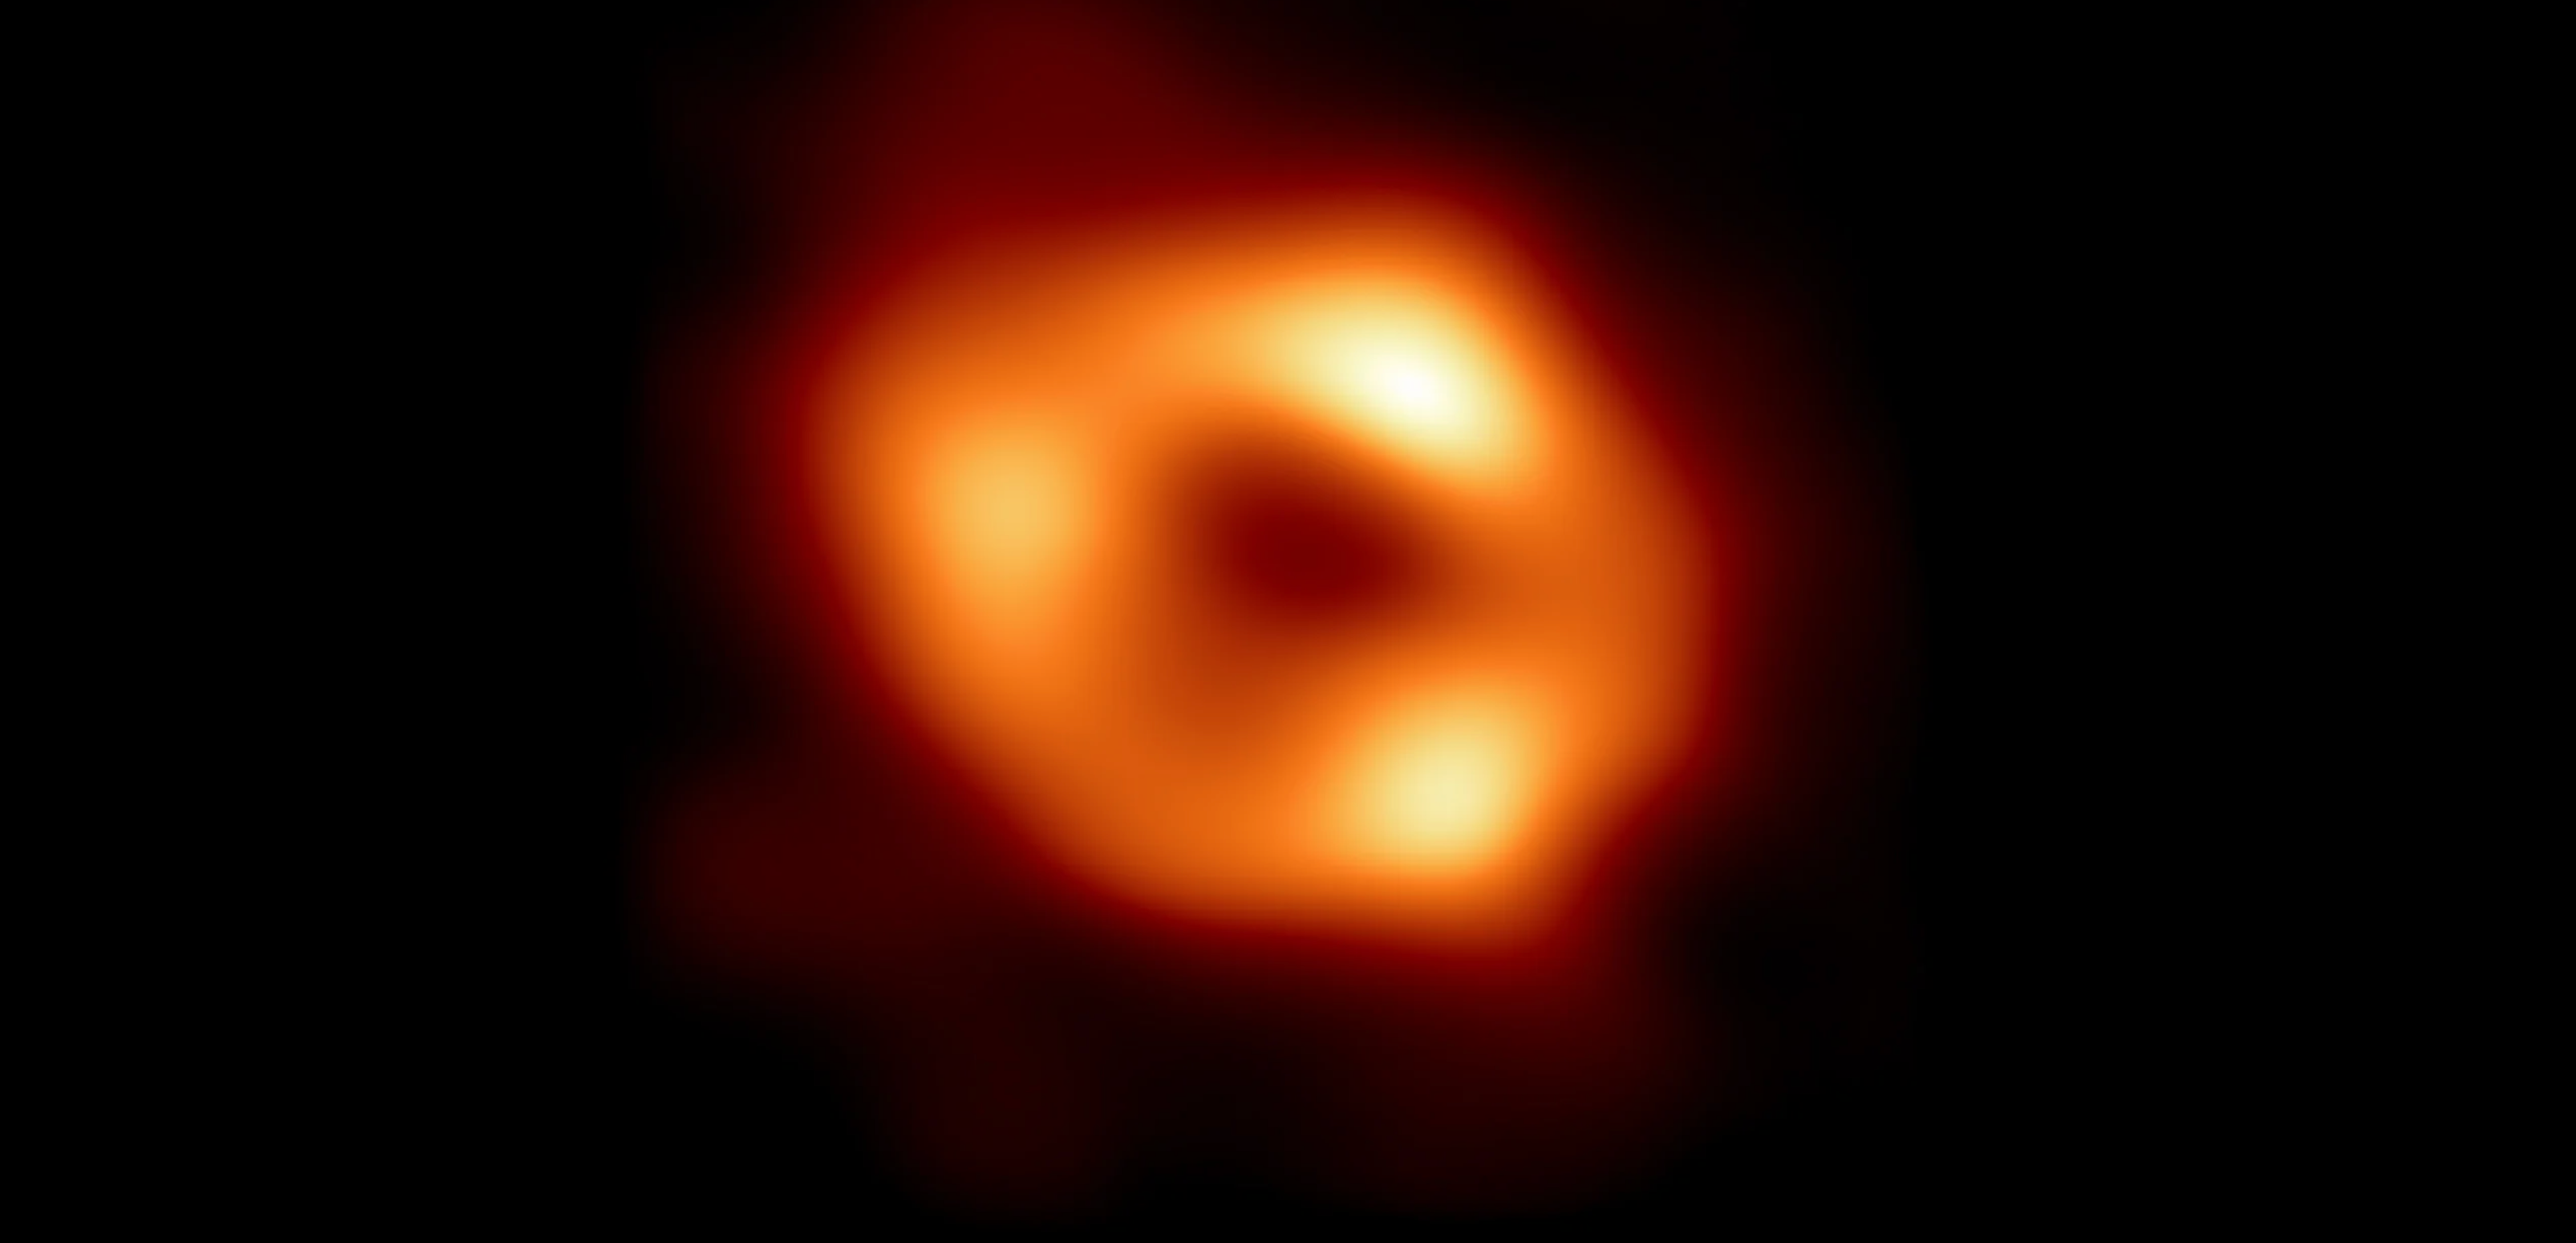 El Sagitario A* es un agujero negro supermasivo que tiene una masa 4 millones de veces mayor que nuestro Sol (Ben Prather, University of Illinois at Urbana-Champaign/EHT Theory Working Group)